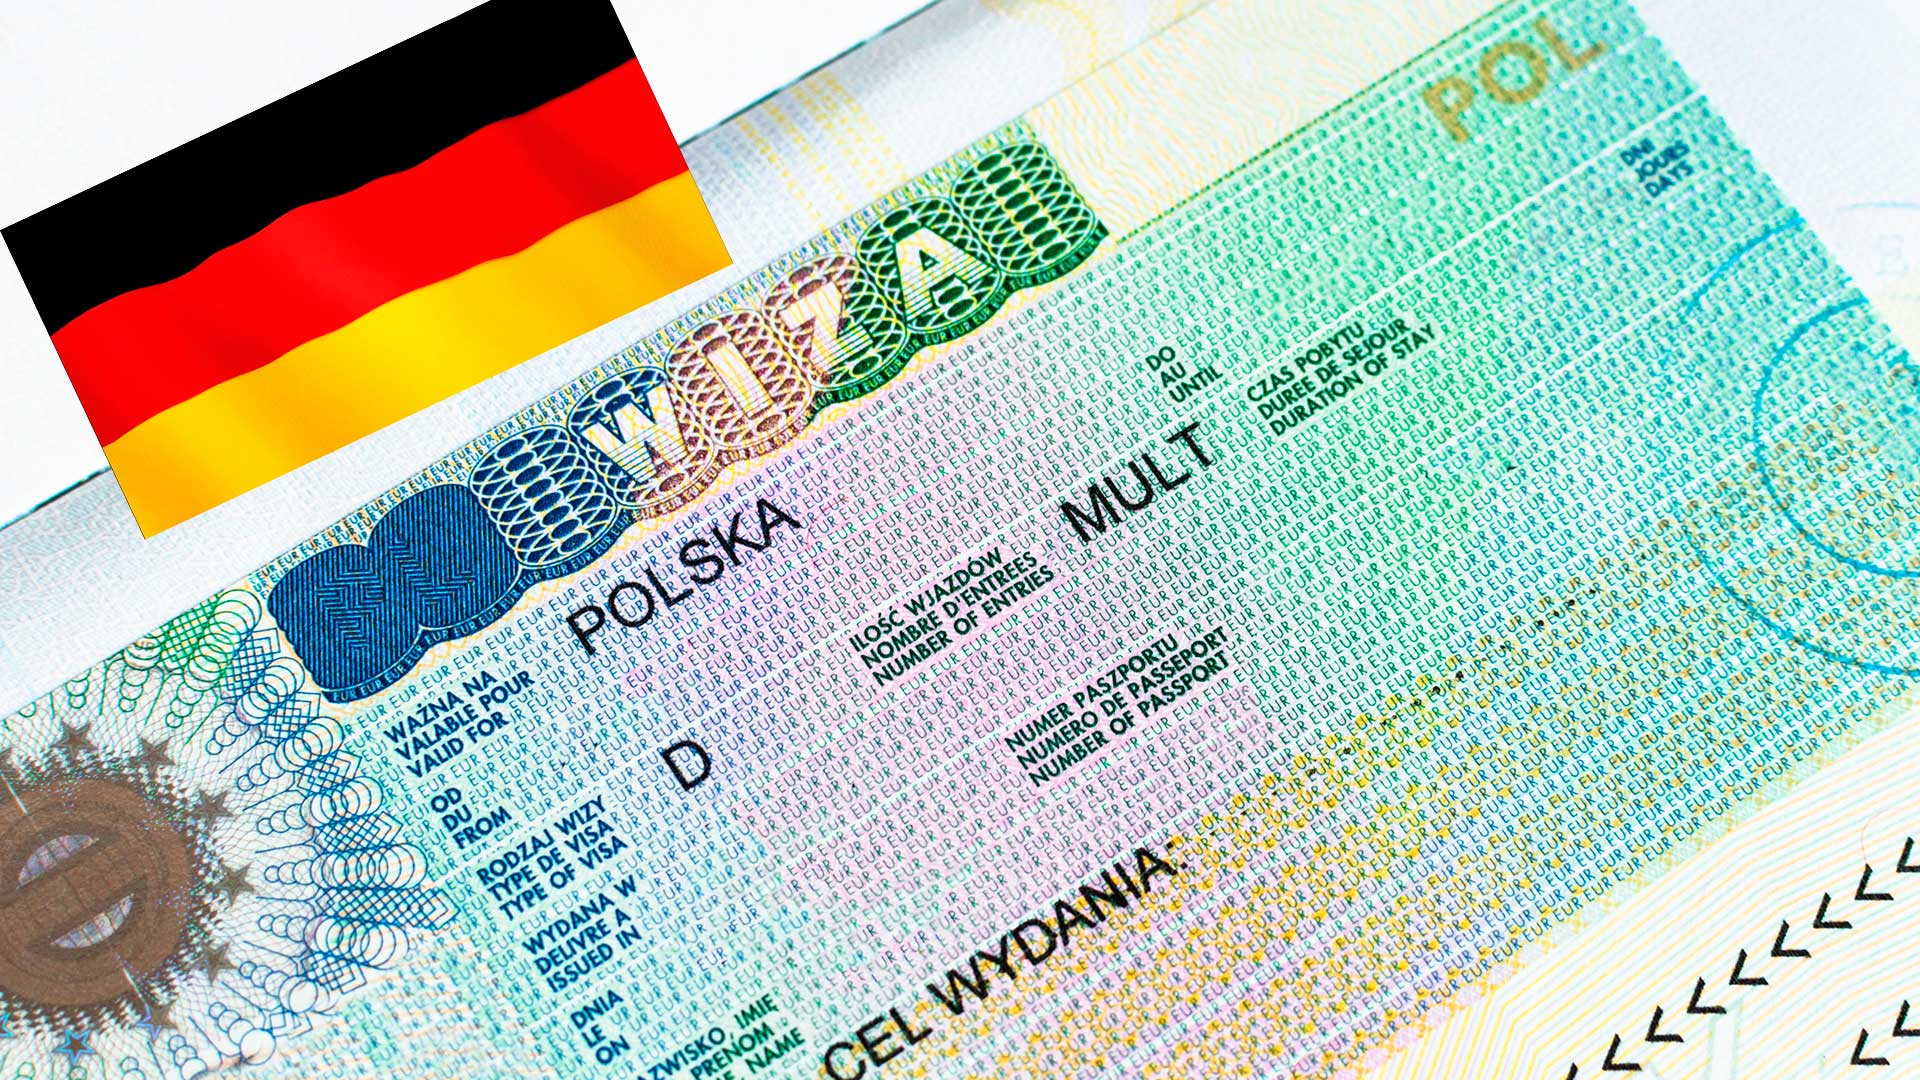 Рабочая виза в польшу в 2020 году — как получить и открыть ее самостоятельно украинцам, белорусам и россиянам